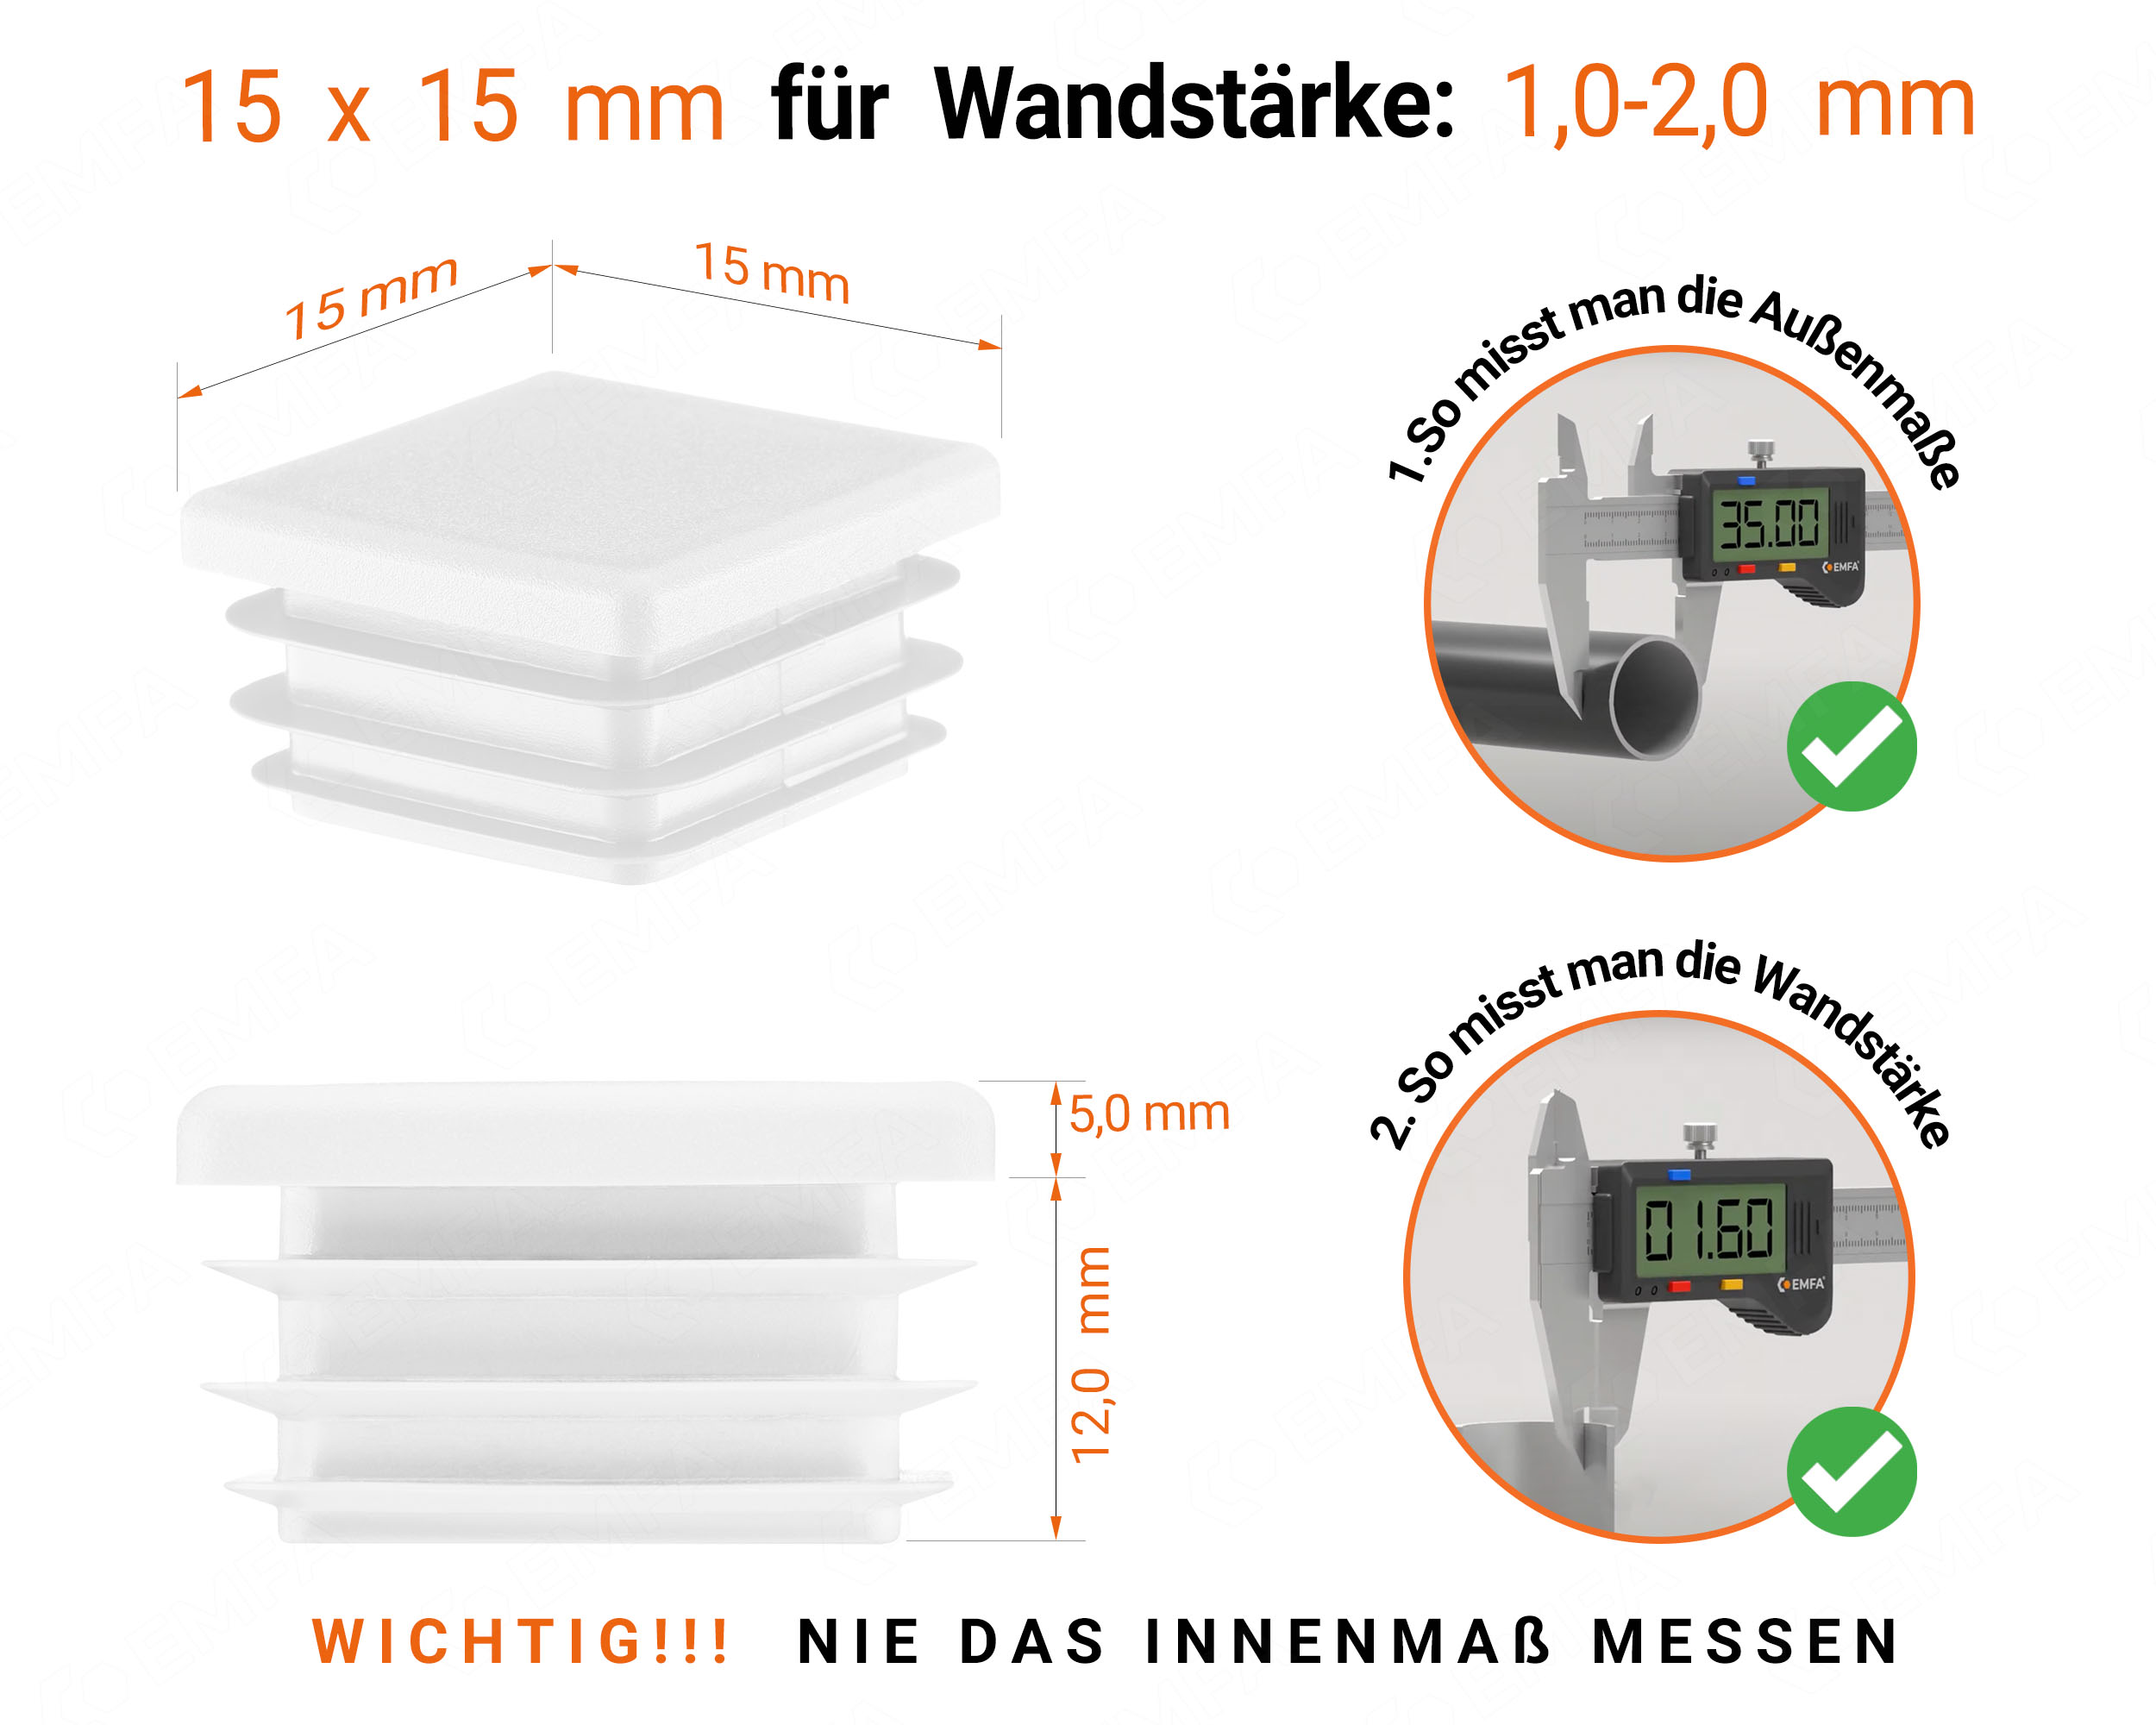 Weiße Endkappe für Vierkantrohre in der Größe 15x15 mm mit technischen Abmessungen und Anleitung für korrekte Messung